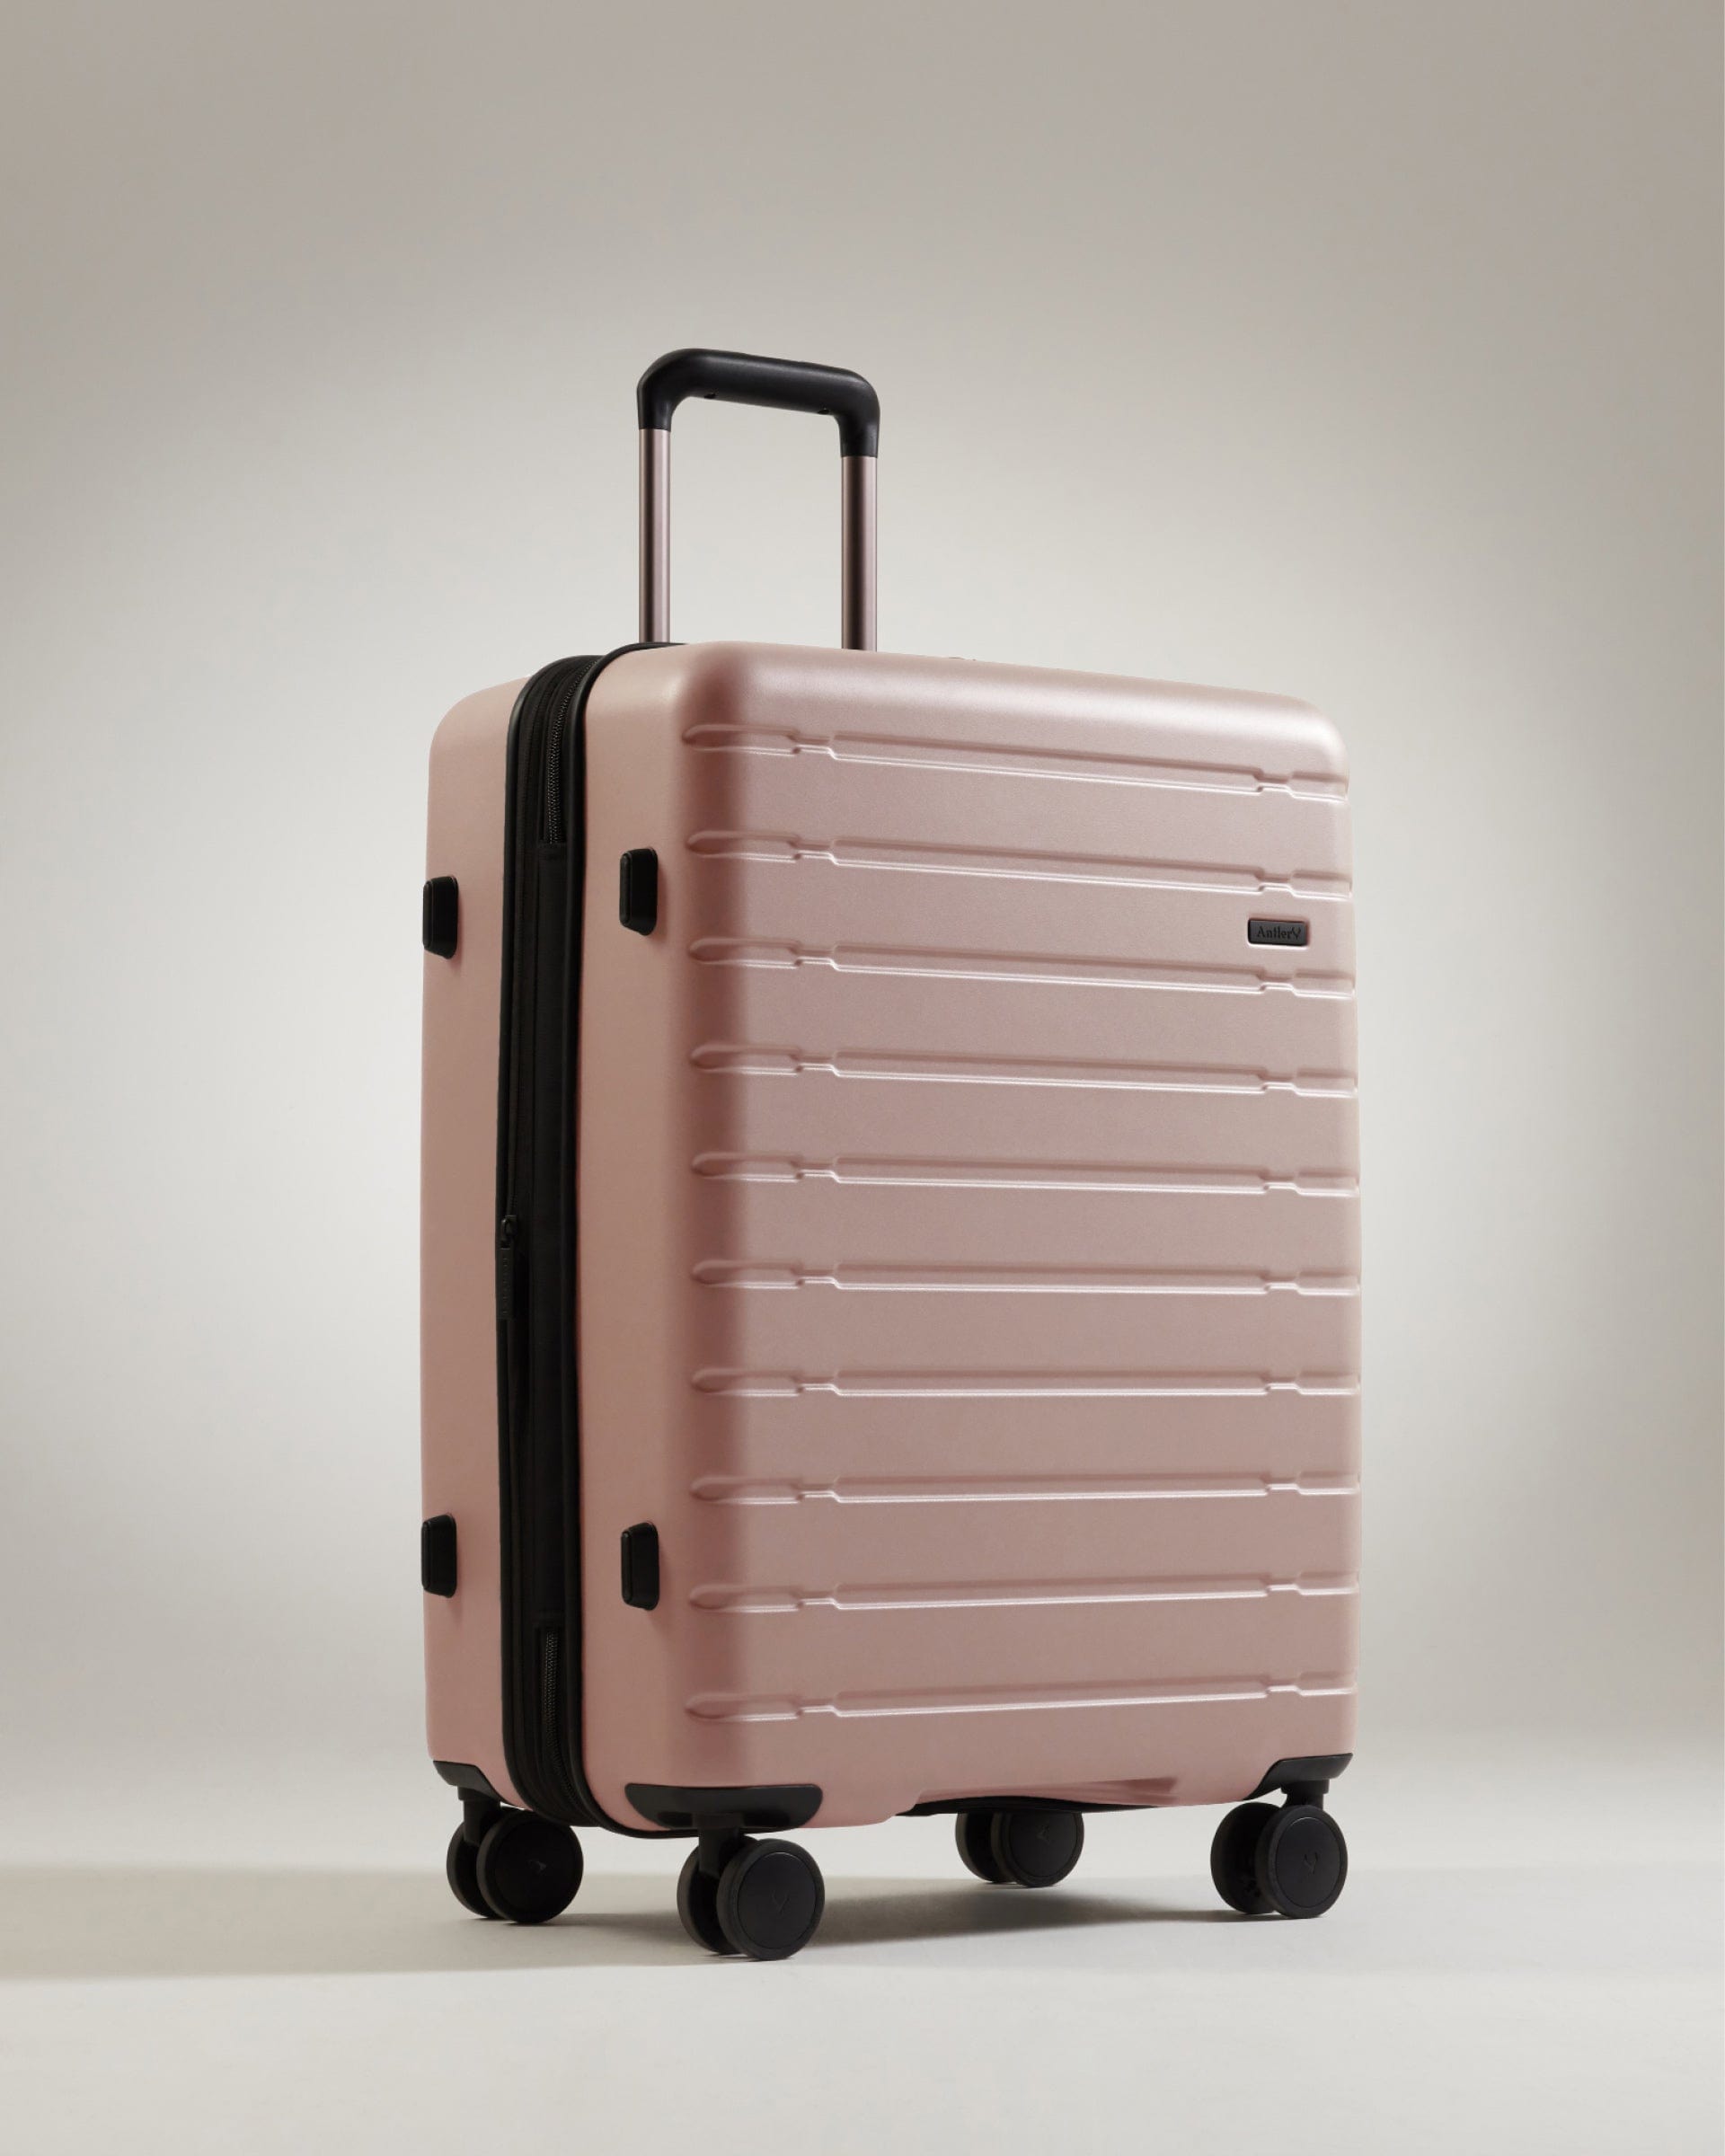 View Antler Stamford Medium Suitcase In Putty Size 295cm x 48cm x 683cm information